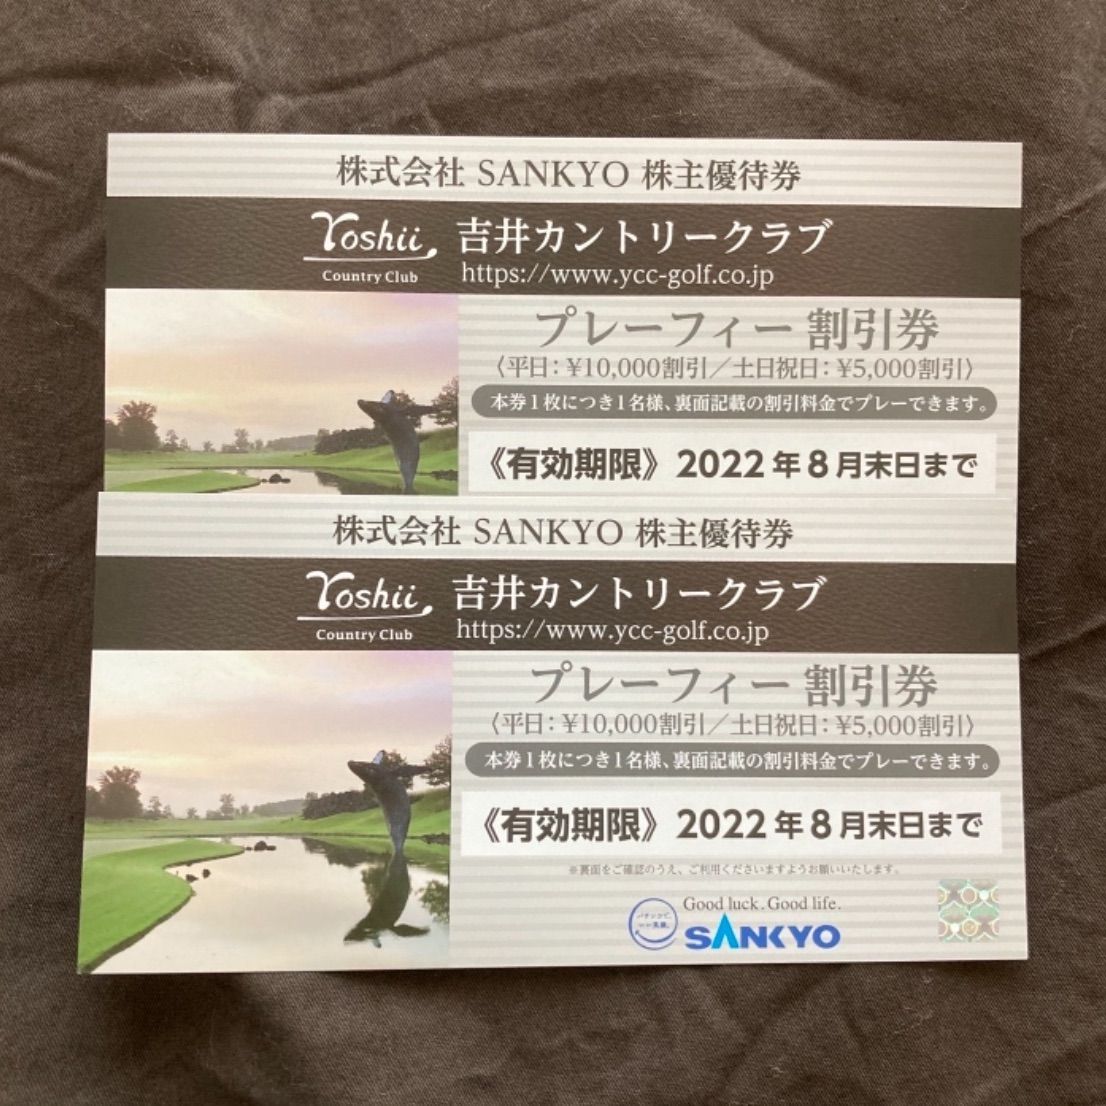 2枚 SANKYO 株主優待 吉井カントリークラブ - ゴルフ場